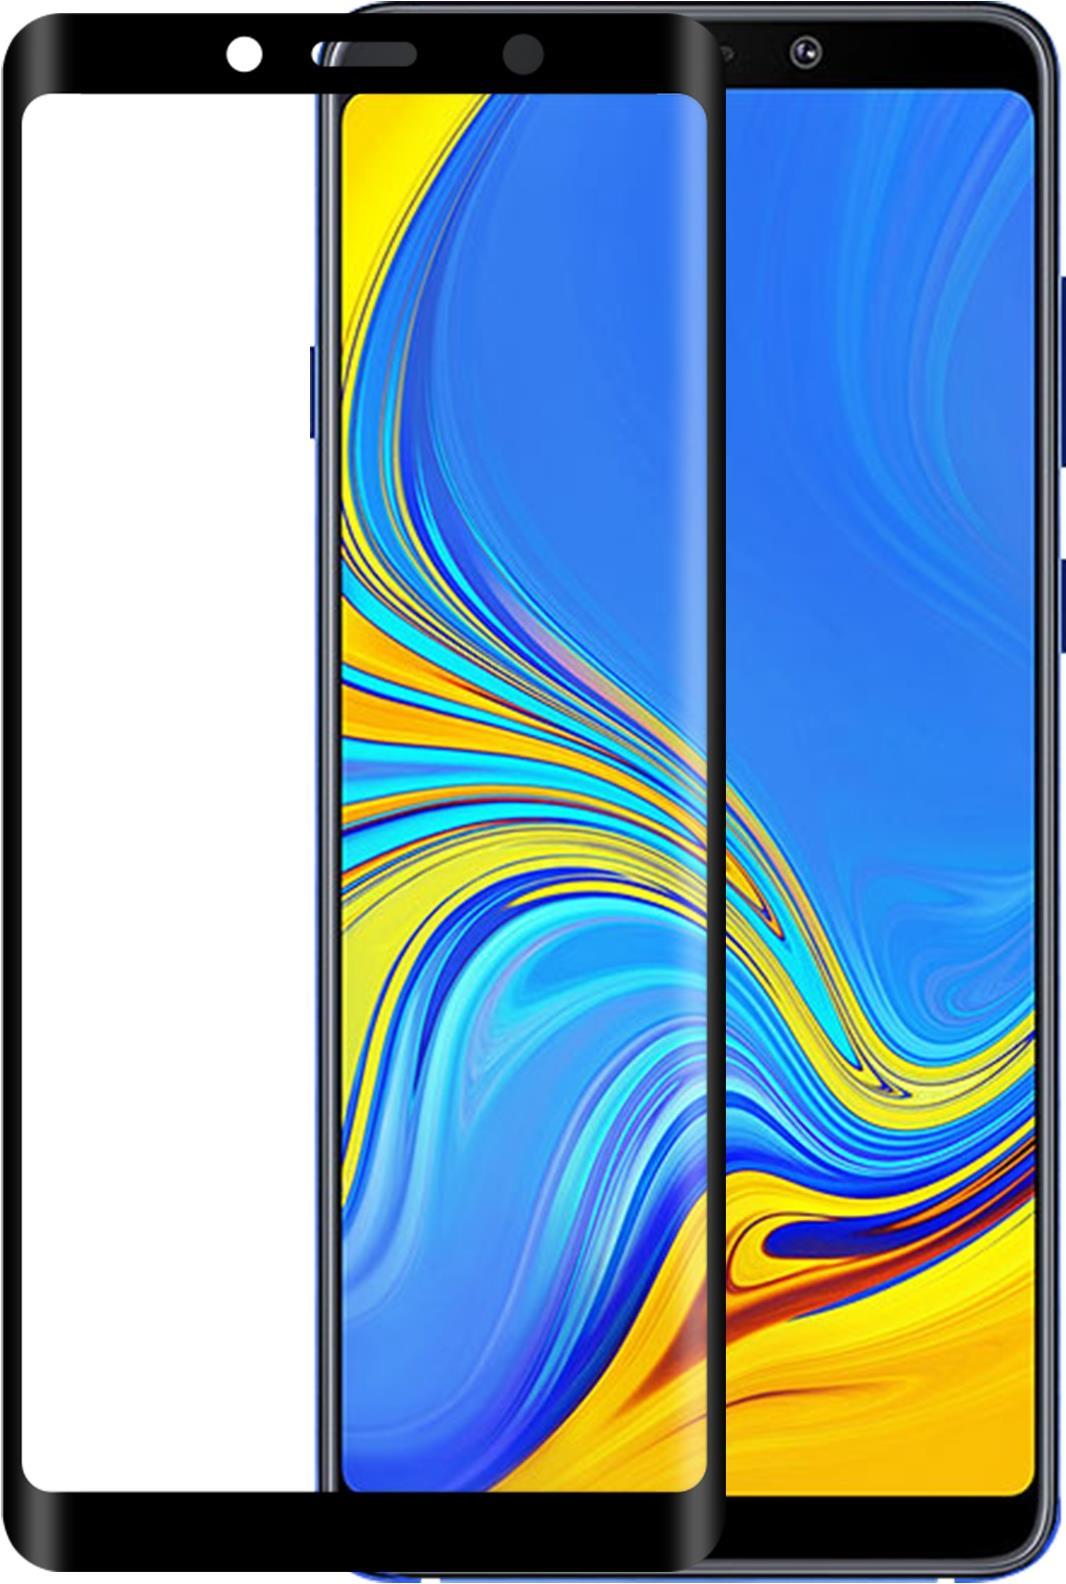 EIGER 3D GLASS - Klare Bildschirmschutzfolie - Samsung - Galaxy A9 - Staubresistent - Kratzresistent - Schockresistent - Schwarz - Transparent - 1 Stück(e) (EGSP00346)